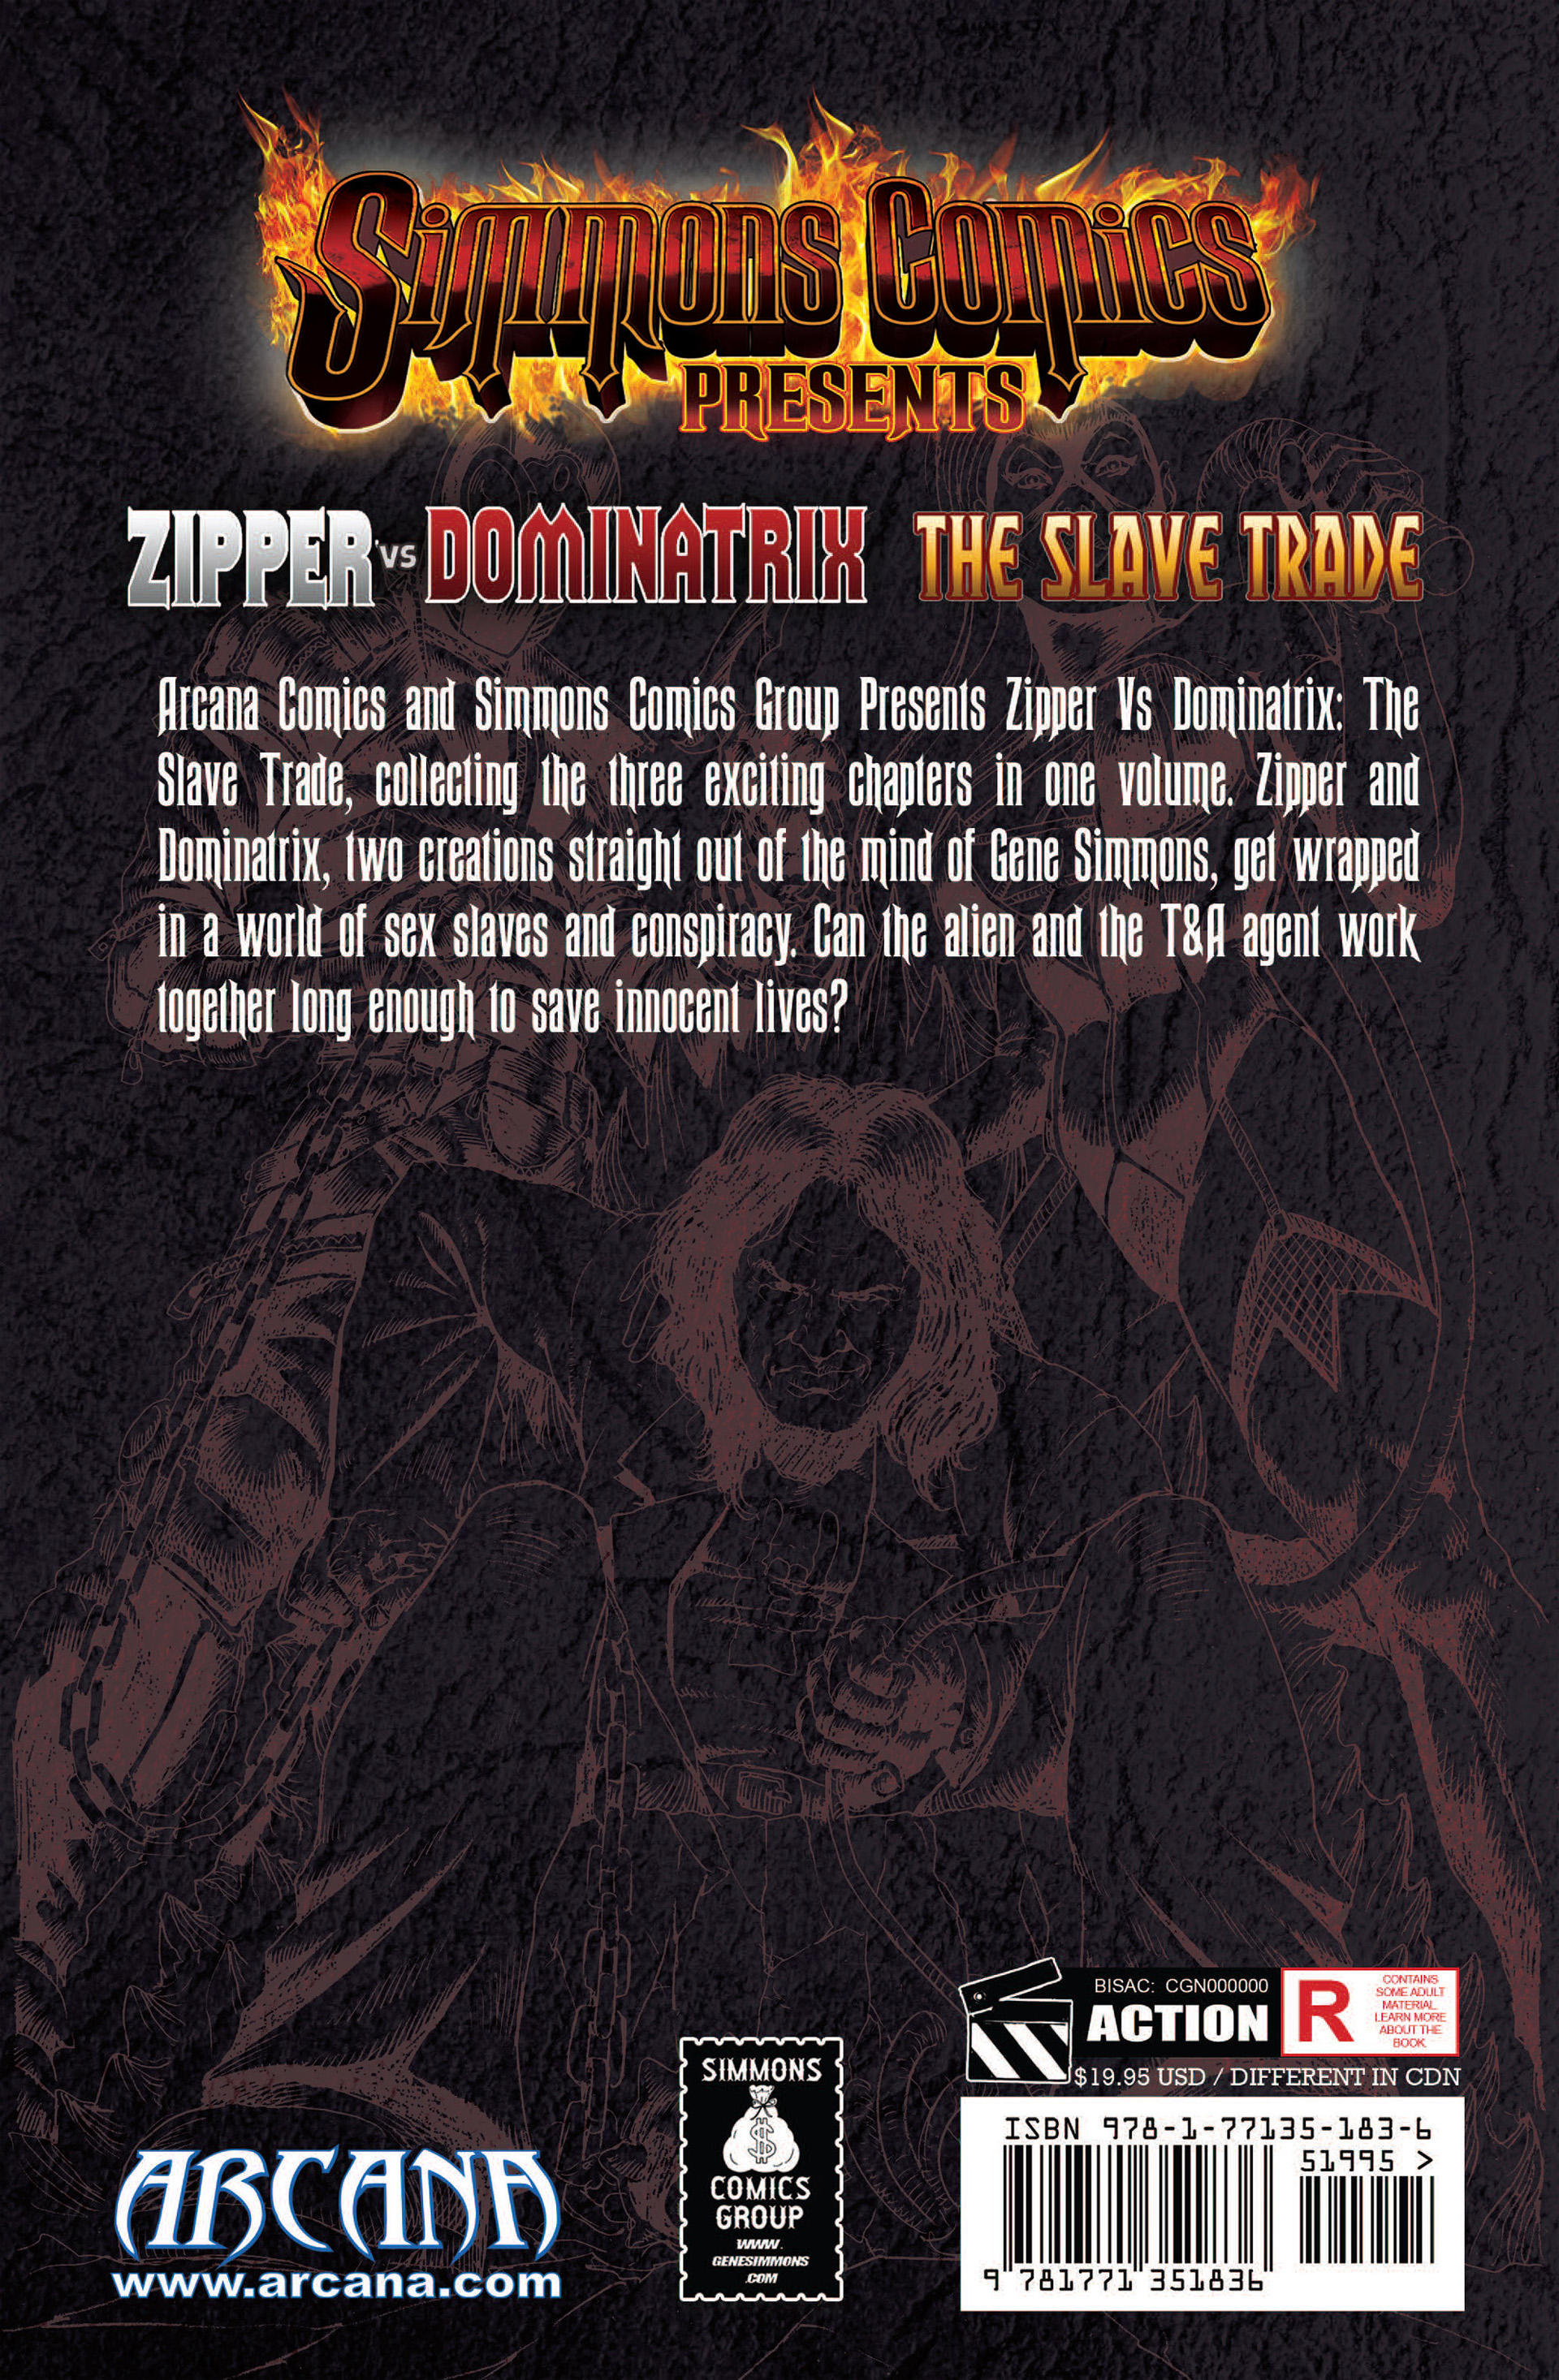 Read online Simmons Comics Presents Zipper vs Dominatrix comic -  Issue # TPB - 94